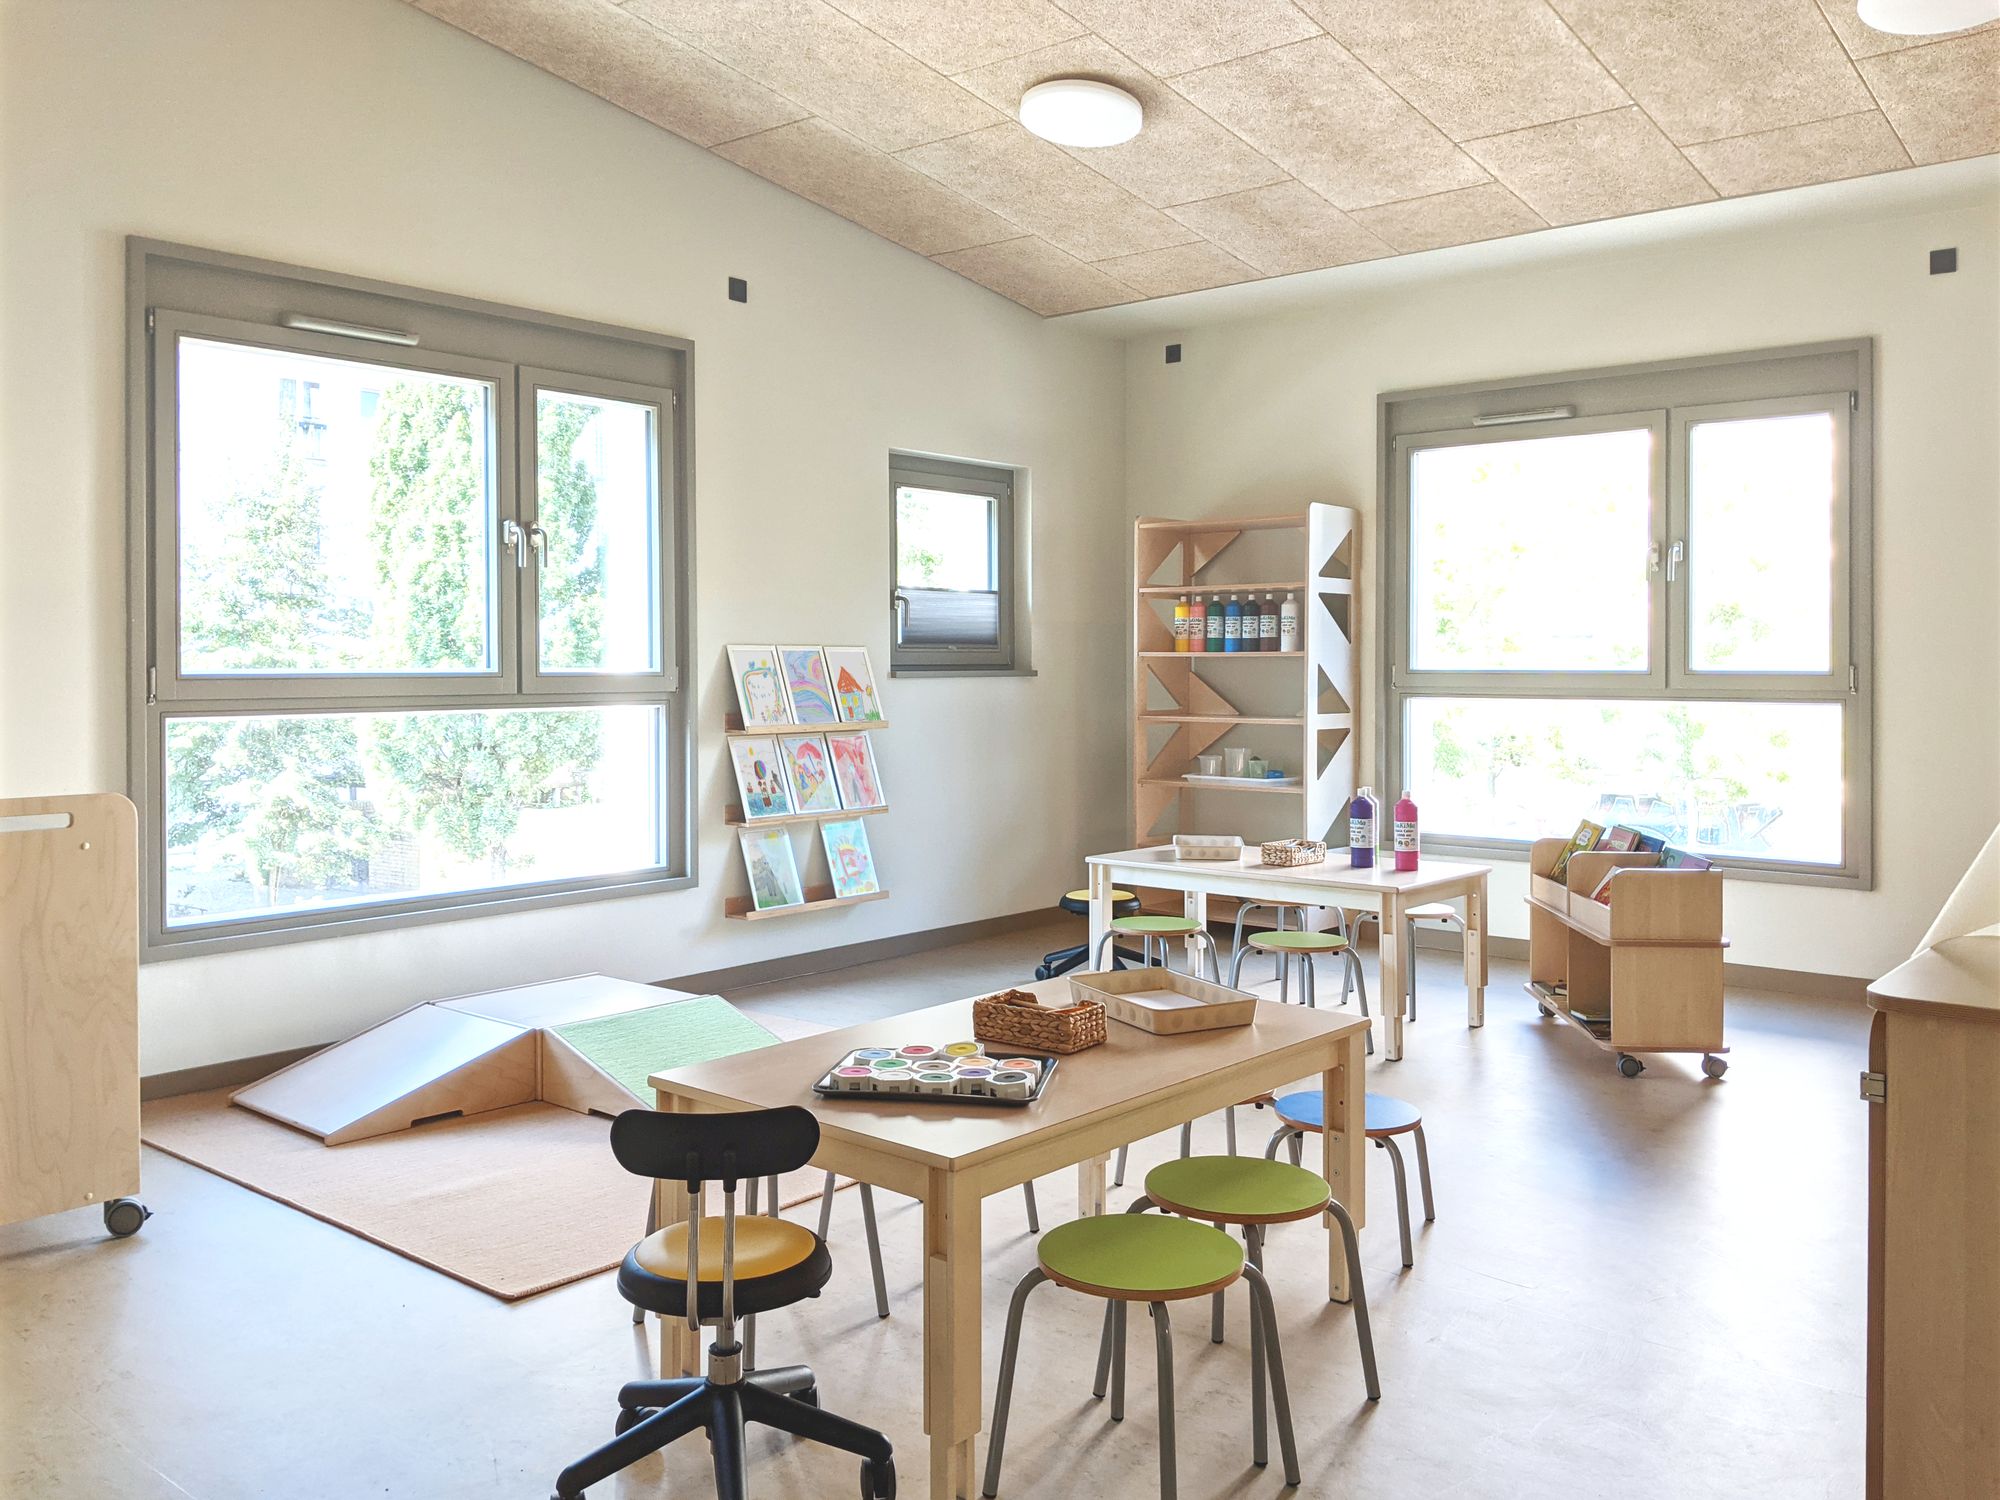 图片[2]|Kita Ora儿童日托设施|ART-Arrakis | 建筑室内设计的创新与灵感